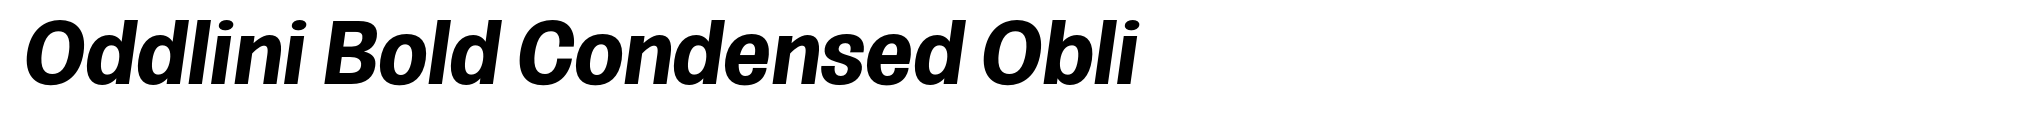 Oddlini Bold Condensed Obli image